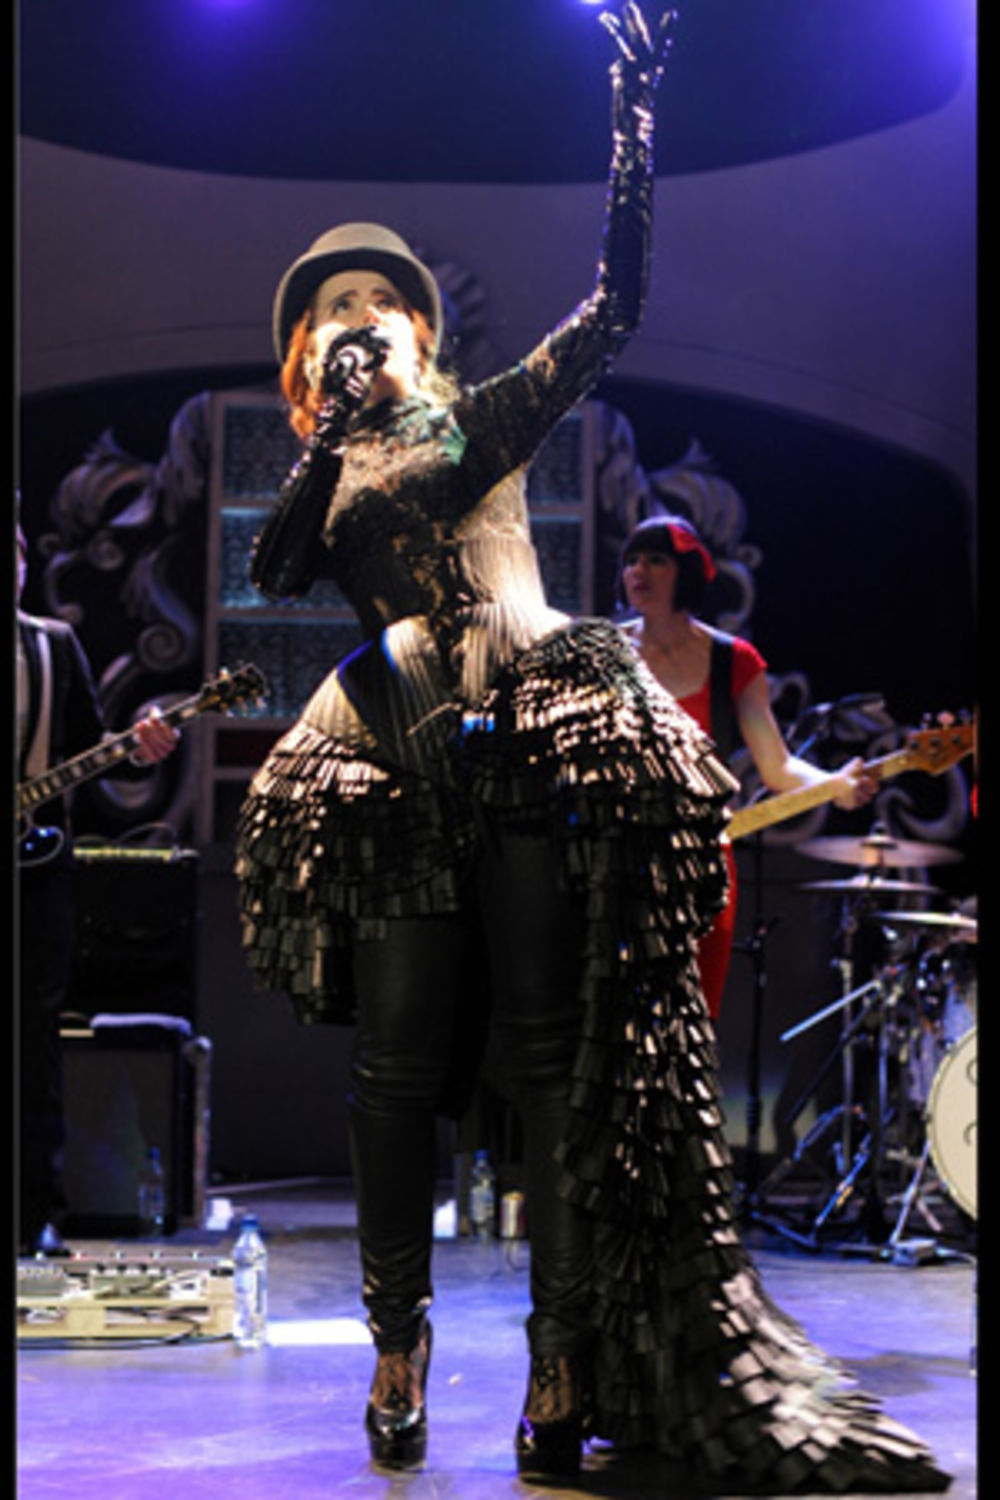 Sve popularnija britanska soul pop senzacija Paloma Fejt svojim prošlogodišnjim debi albumom i izuzetnim kostimima koje nosi na koncertnim performansima nalazi se na putu da se vine u sam vrh svetske muzičke scene